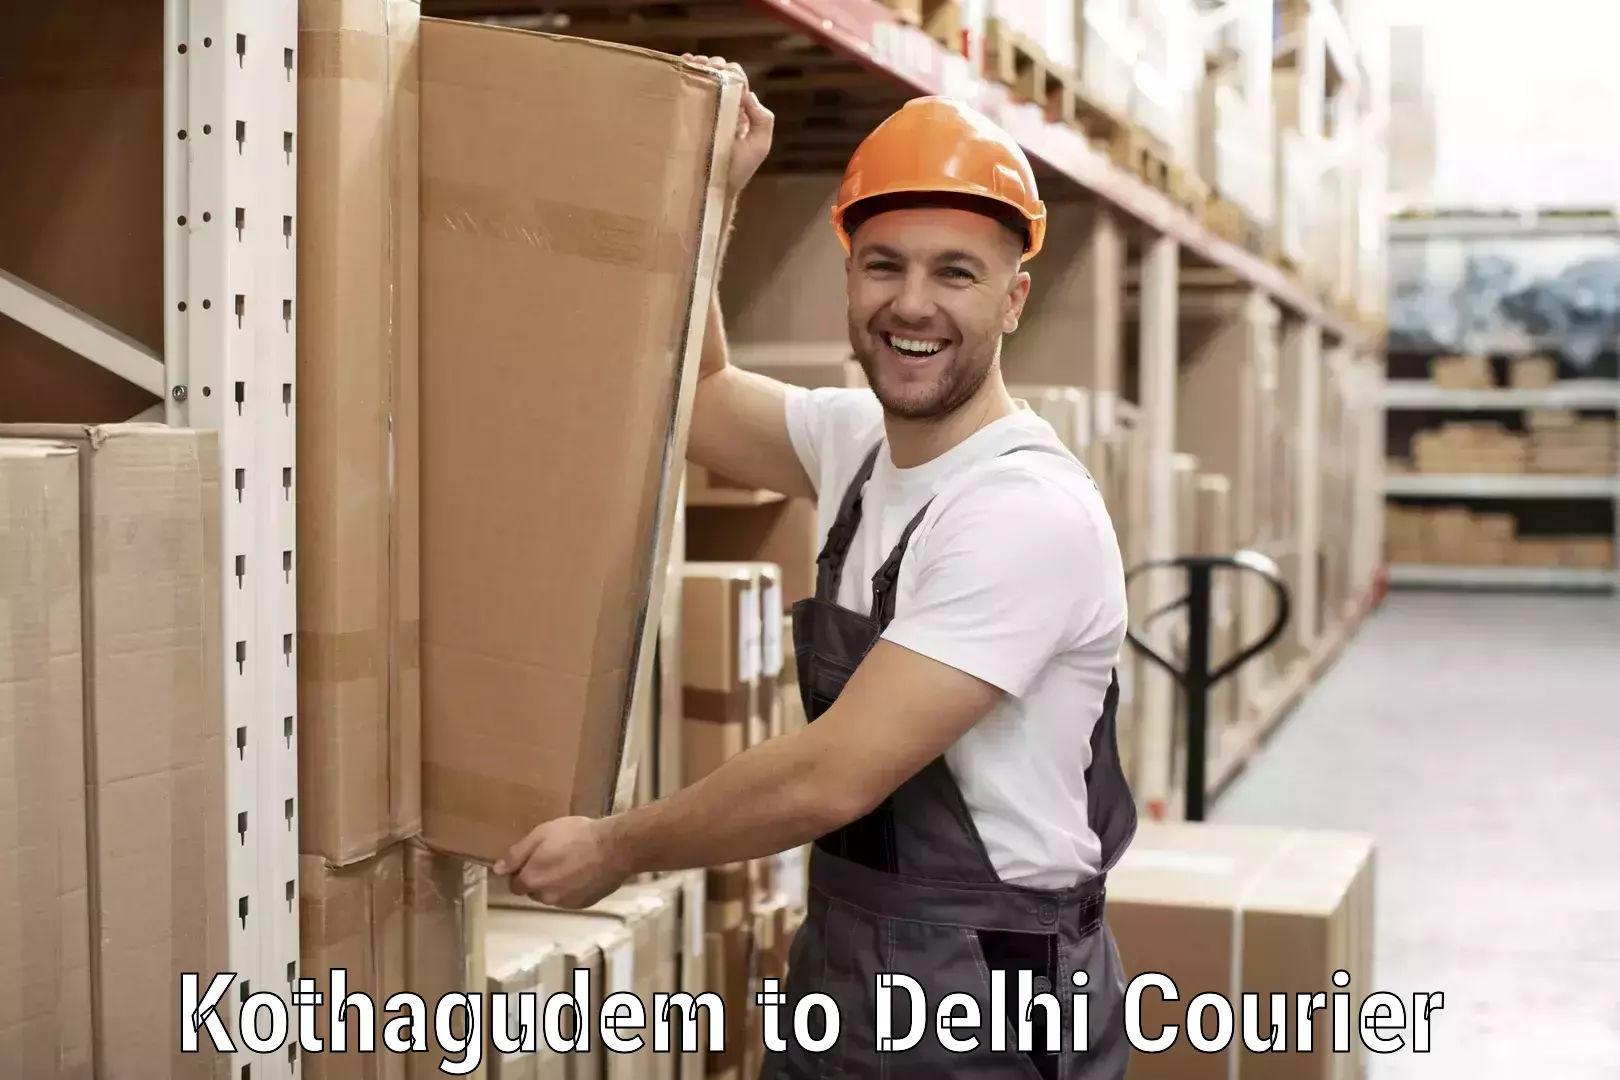 Ocean freight courier Kothagudem to University of Delhi